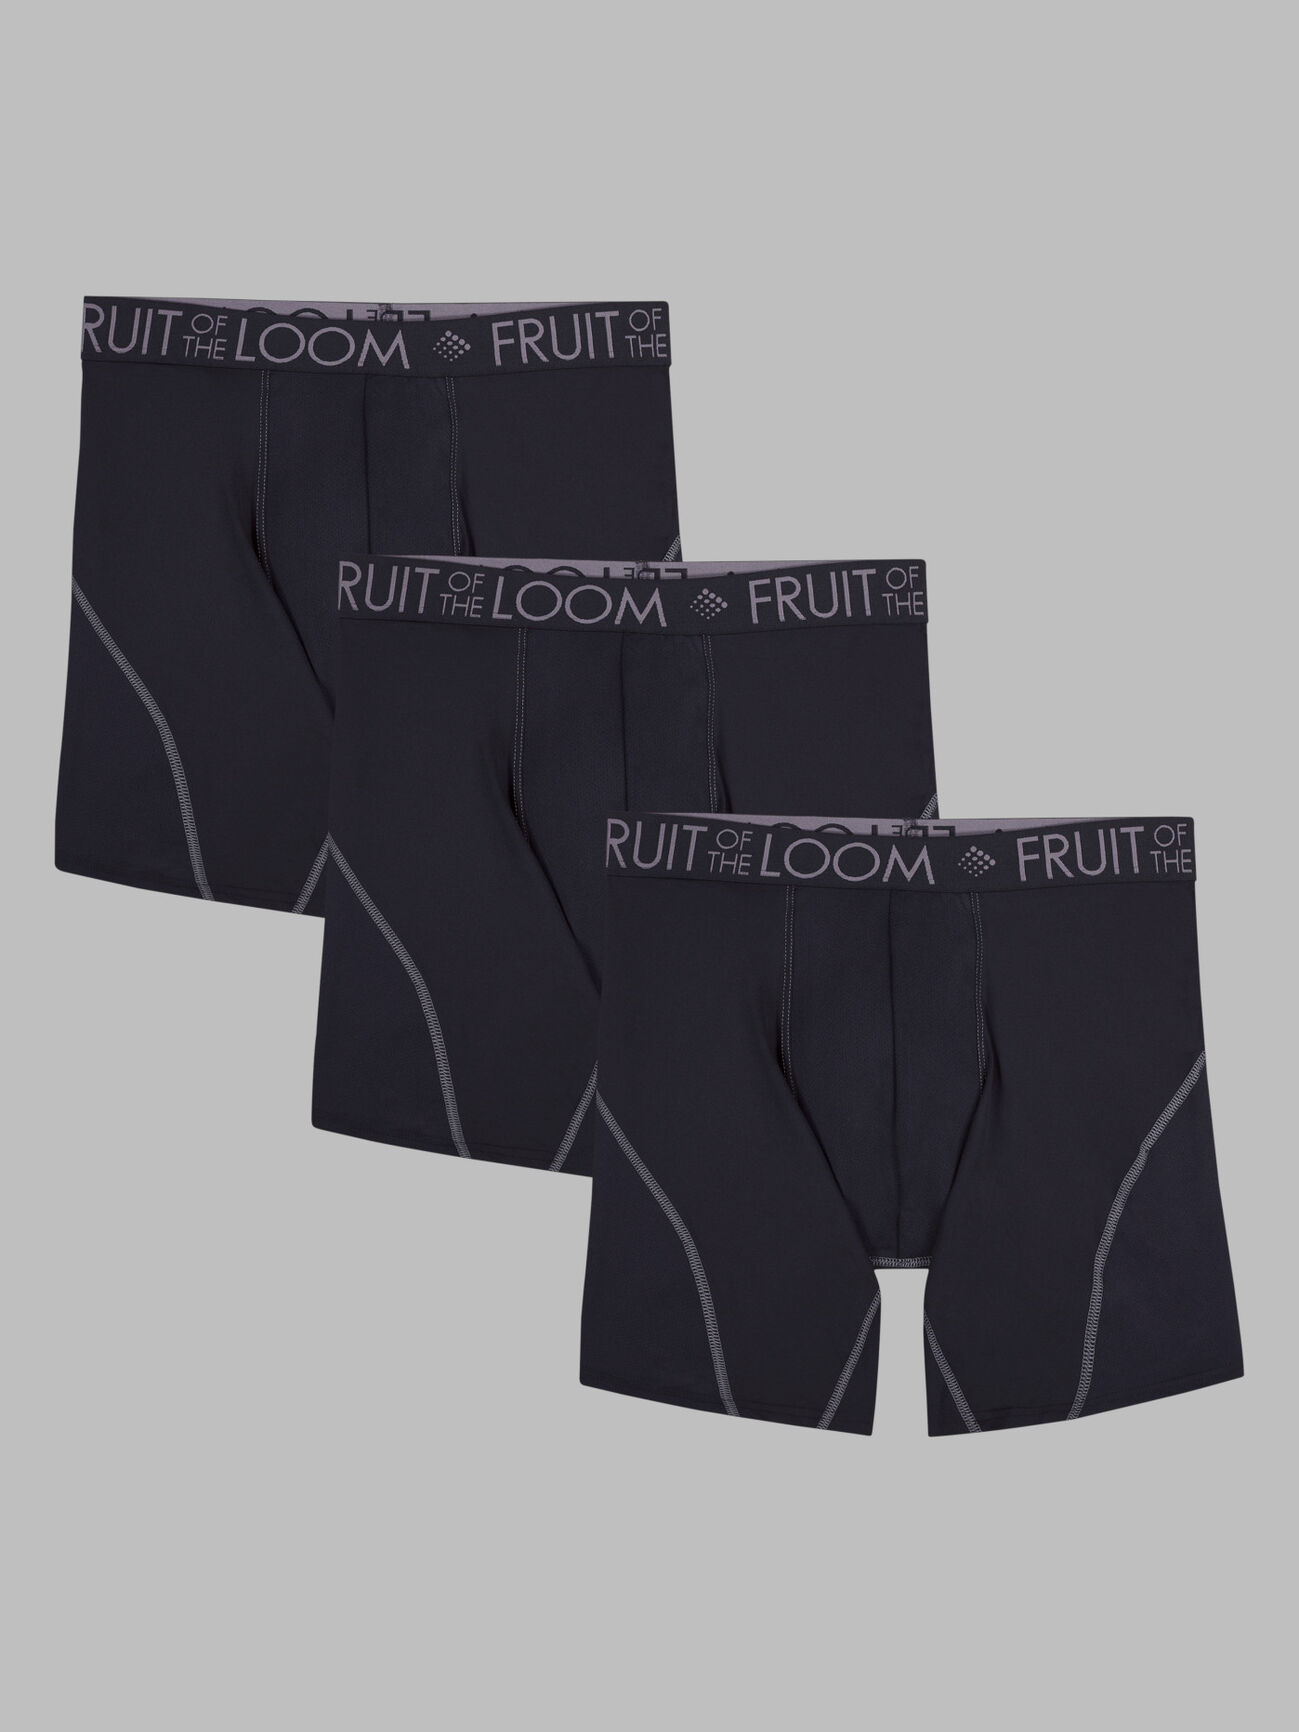 Fruit of the Loom Men's 3Pack White Briefs Underwear, 3XL 